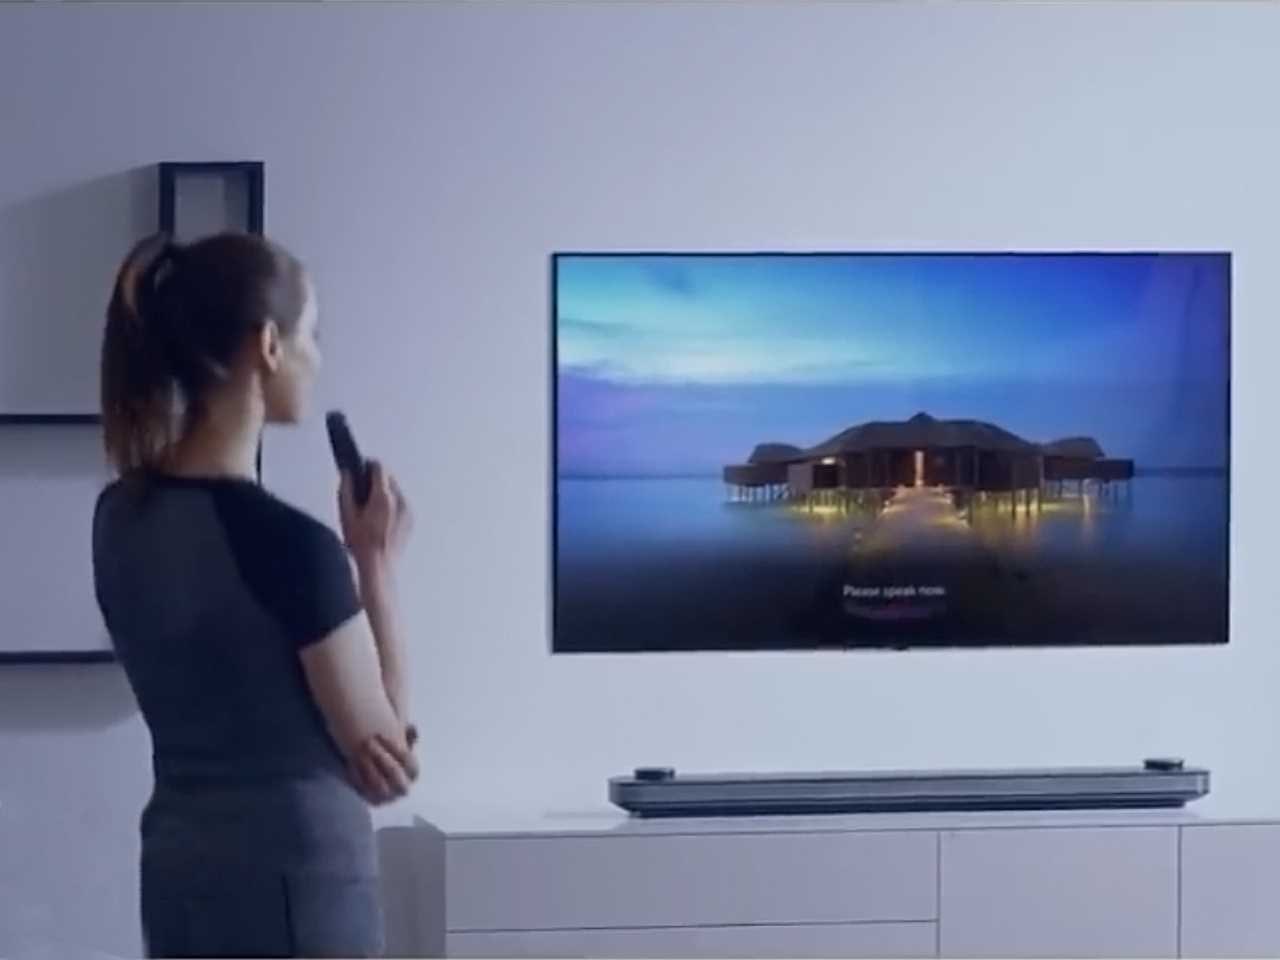 LG анонсировала усовершенствованный телевизор LG OLED W8 с невероятным процессором Альфа 9 и функцией искусственного интеллекта